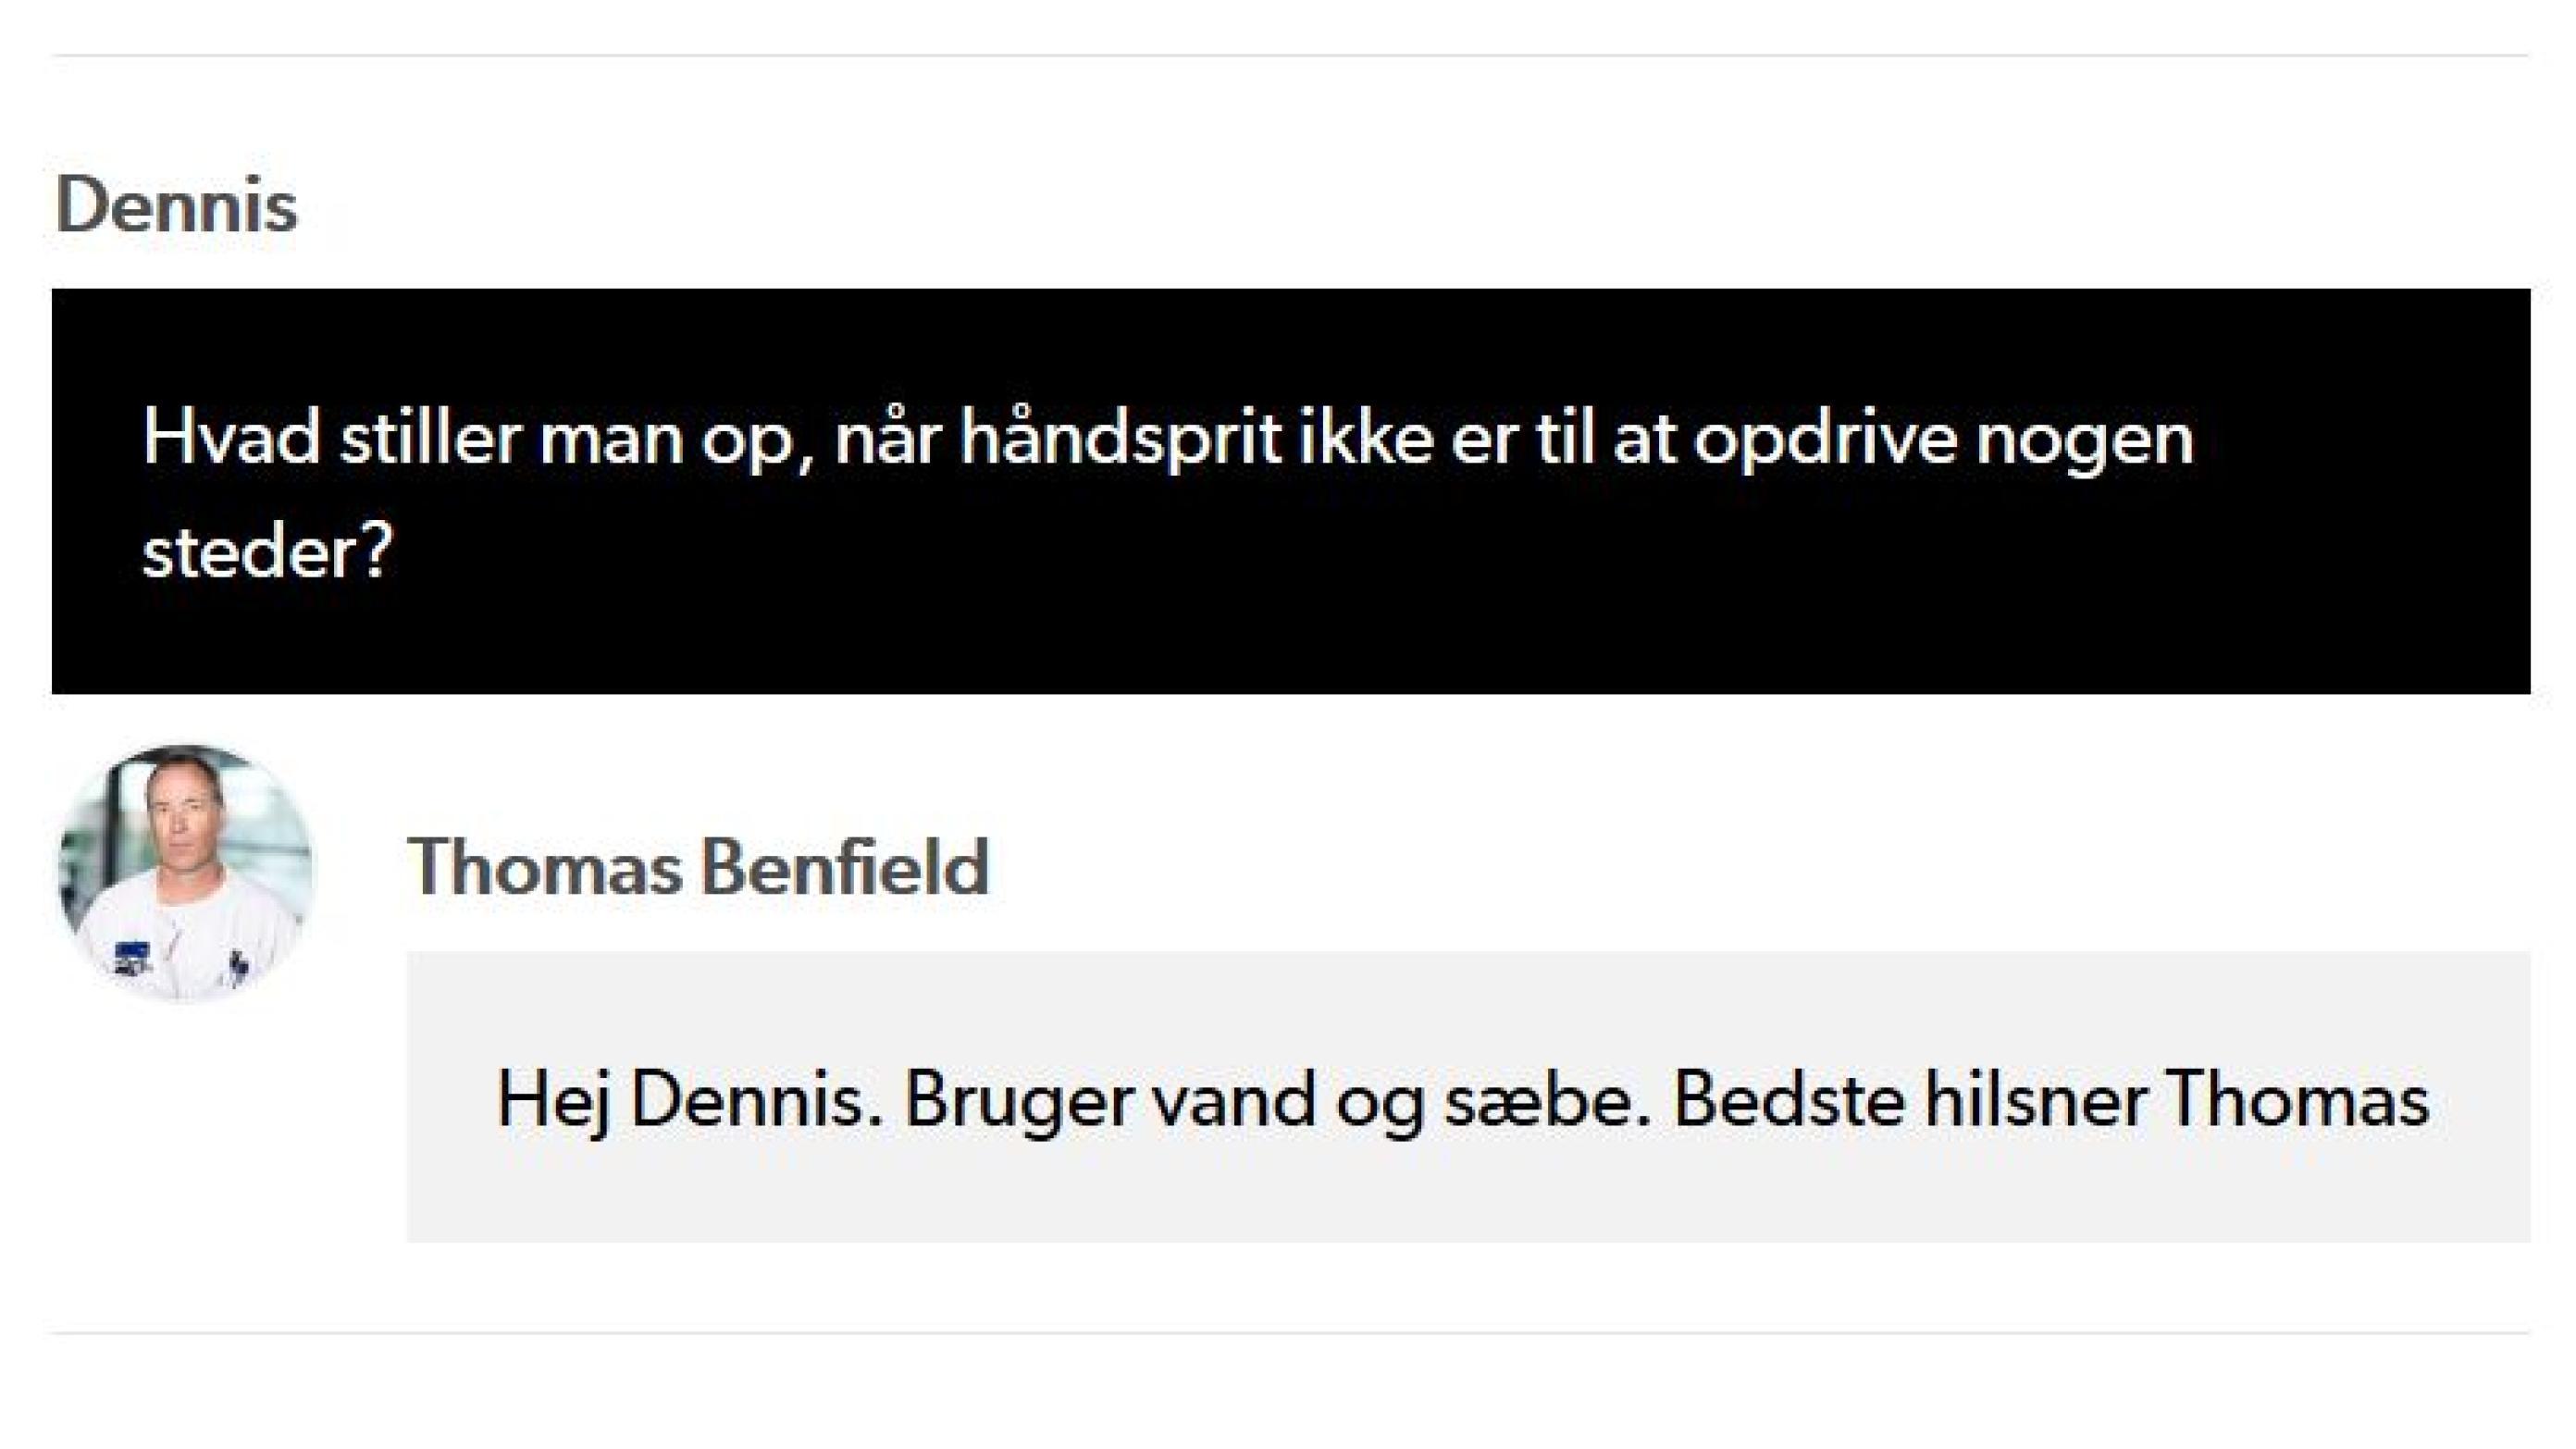 Skærmbillede fra en LIVE-chat mellem borgere og eksperter på DR.dk.